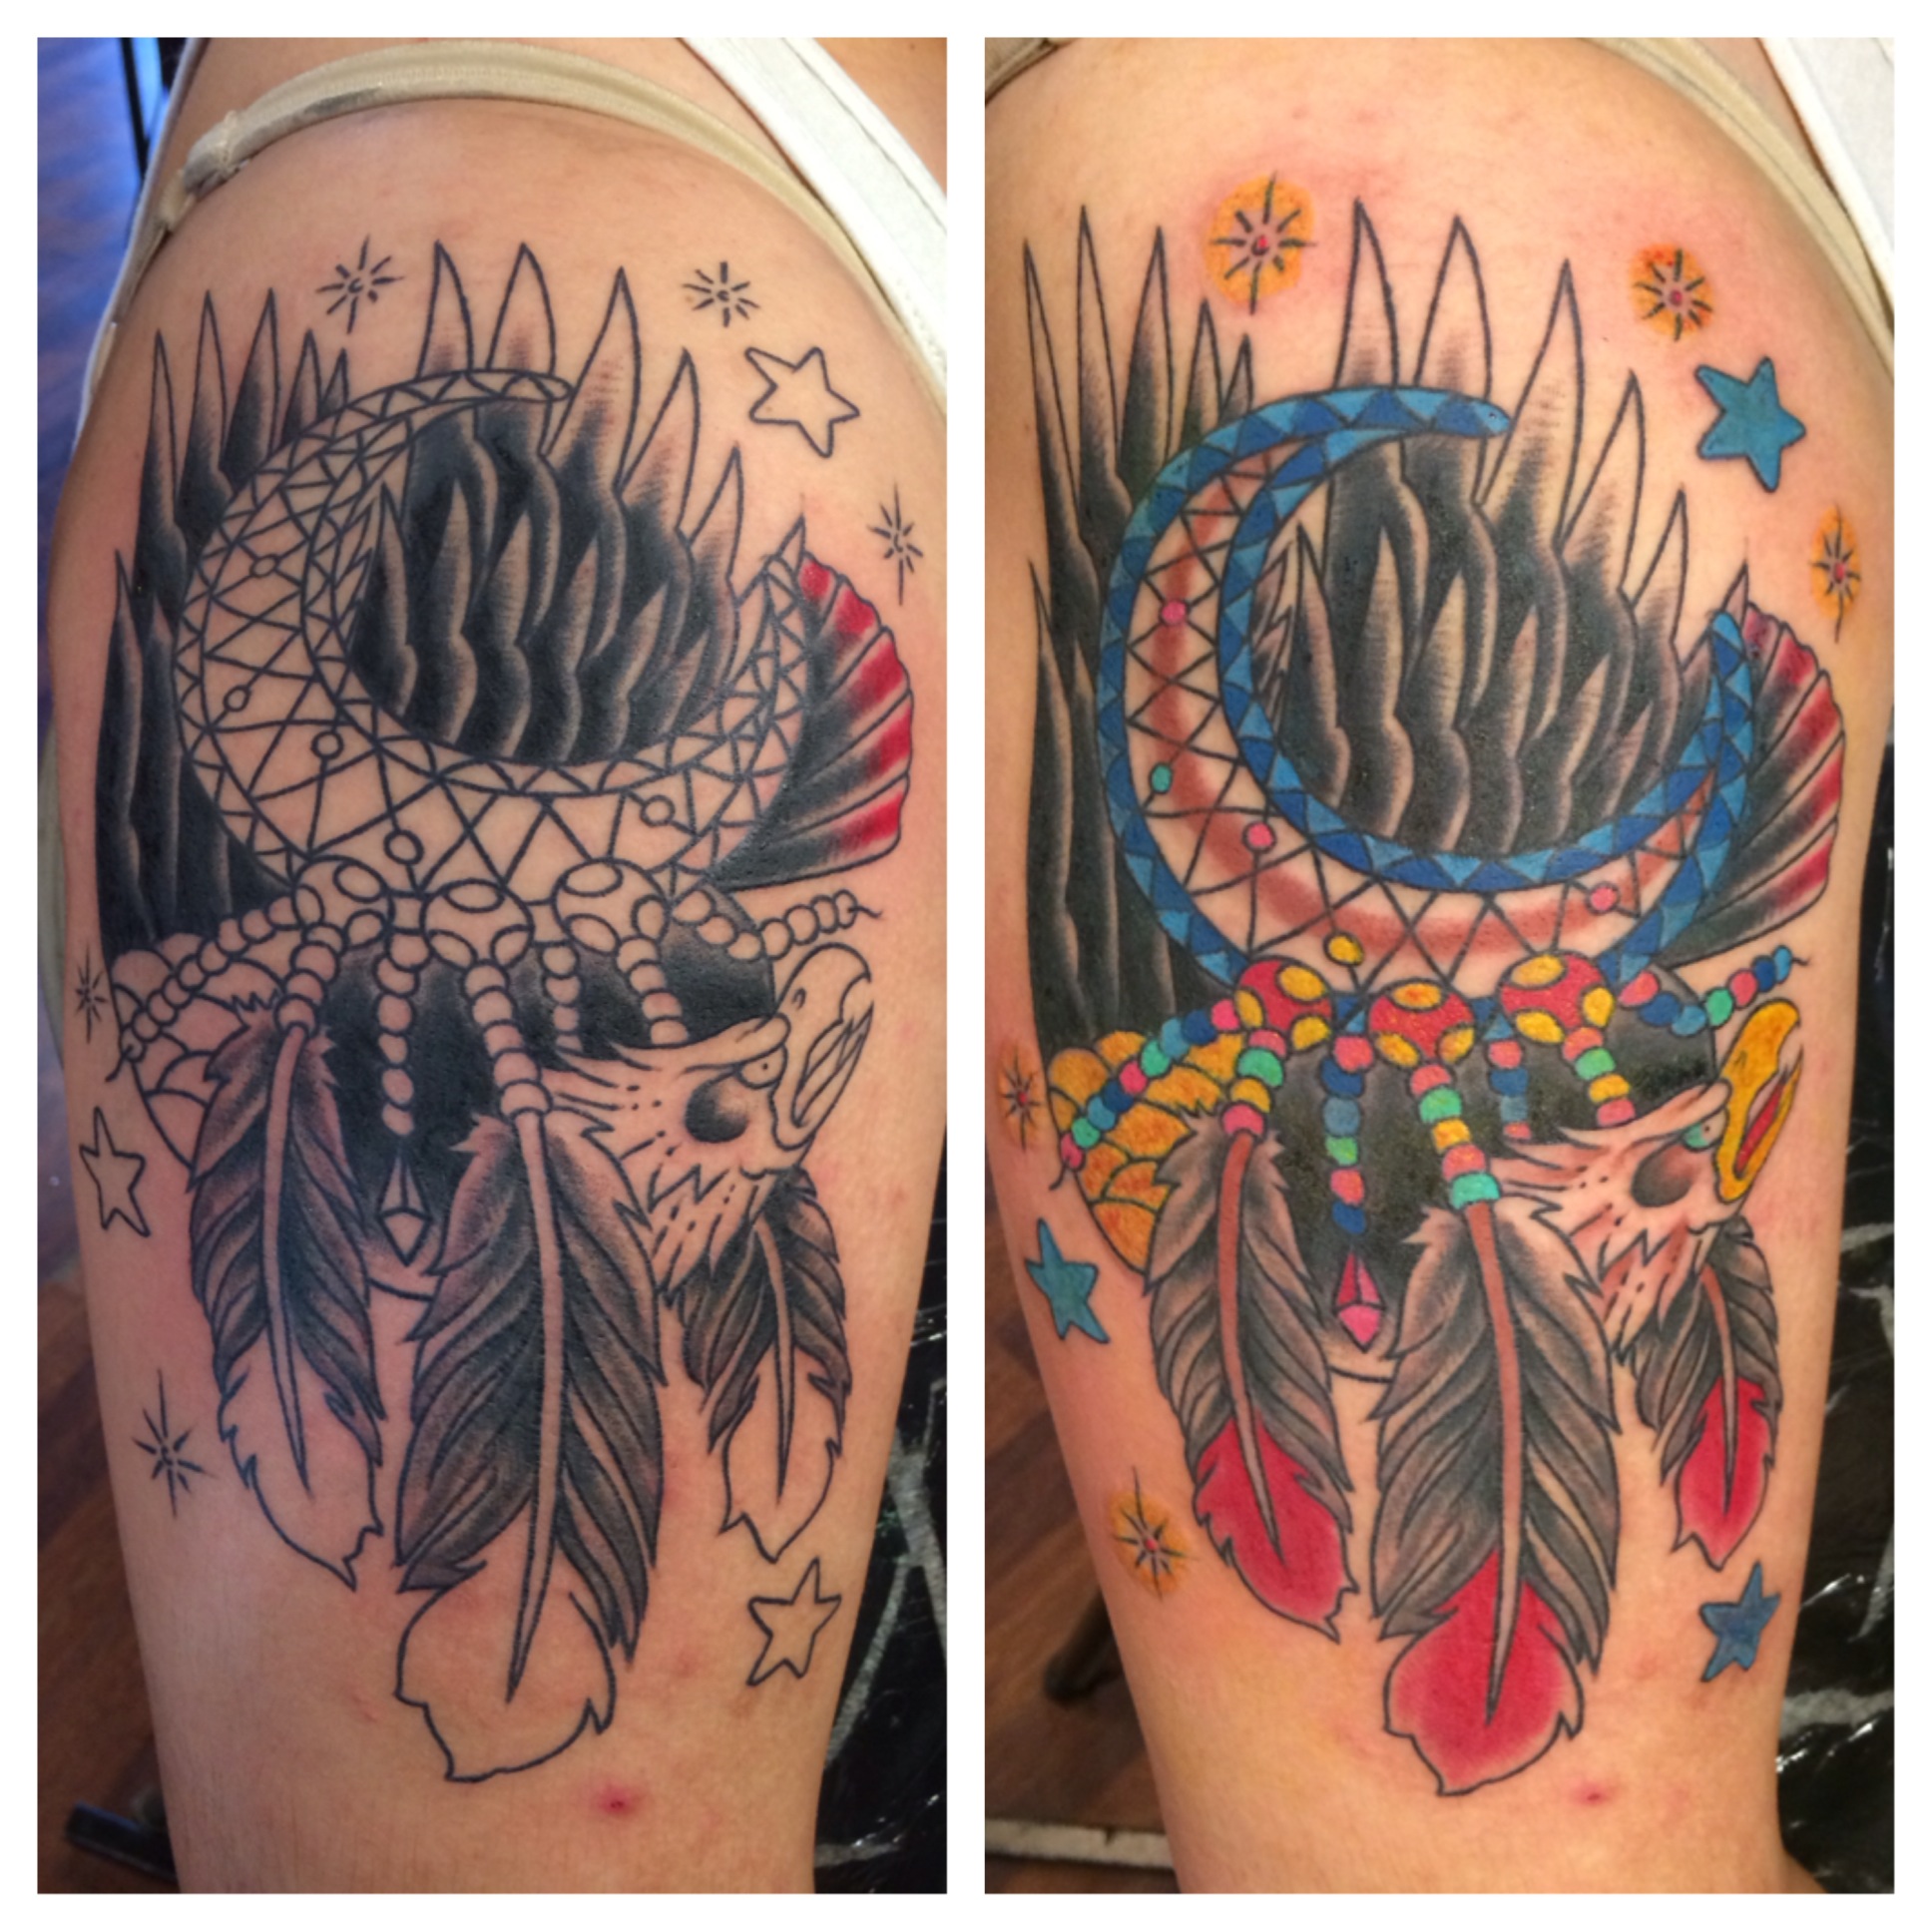 Jason Colehour | Minneapolis Tattoo Artist - Broken Hearts Tattoo Club